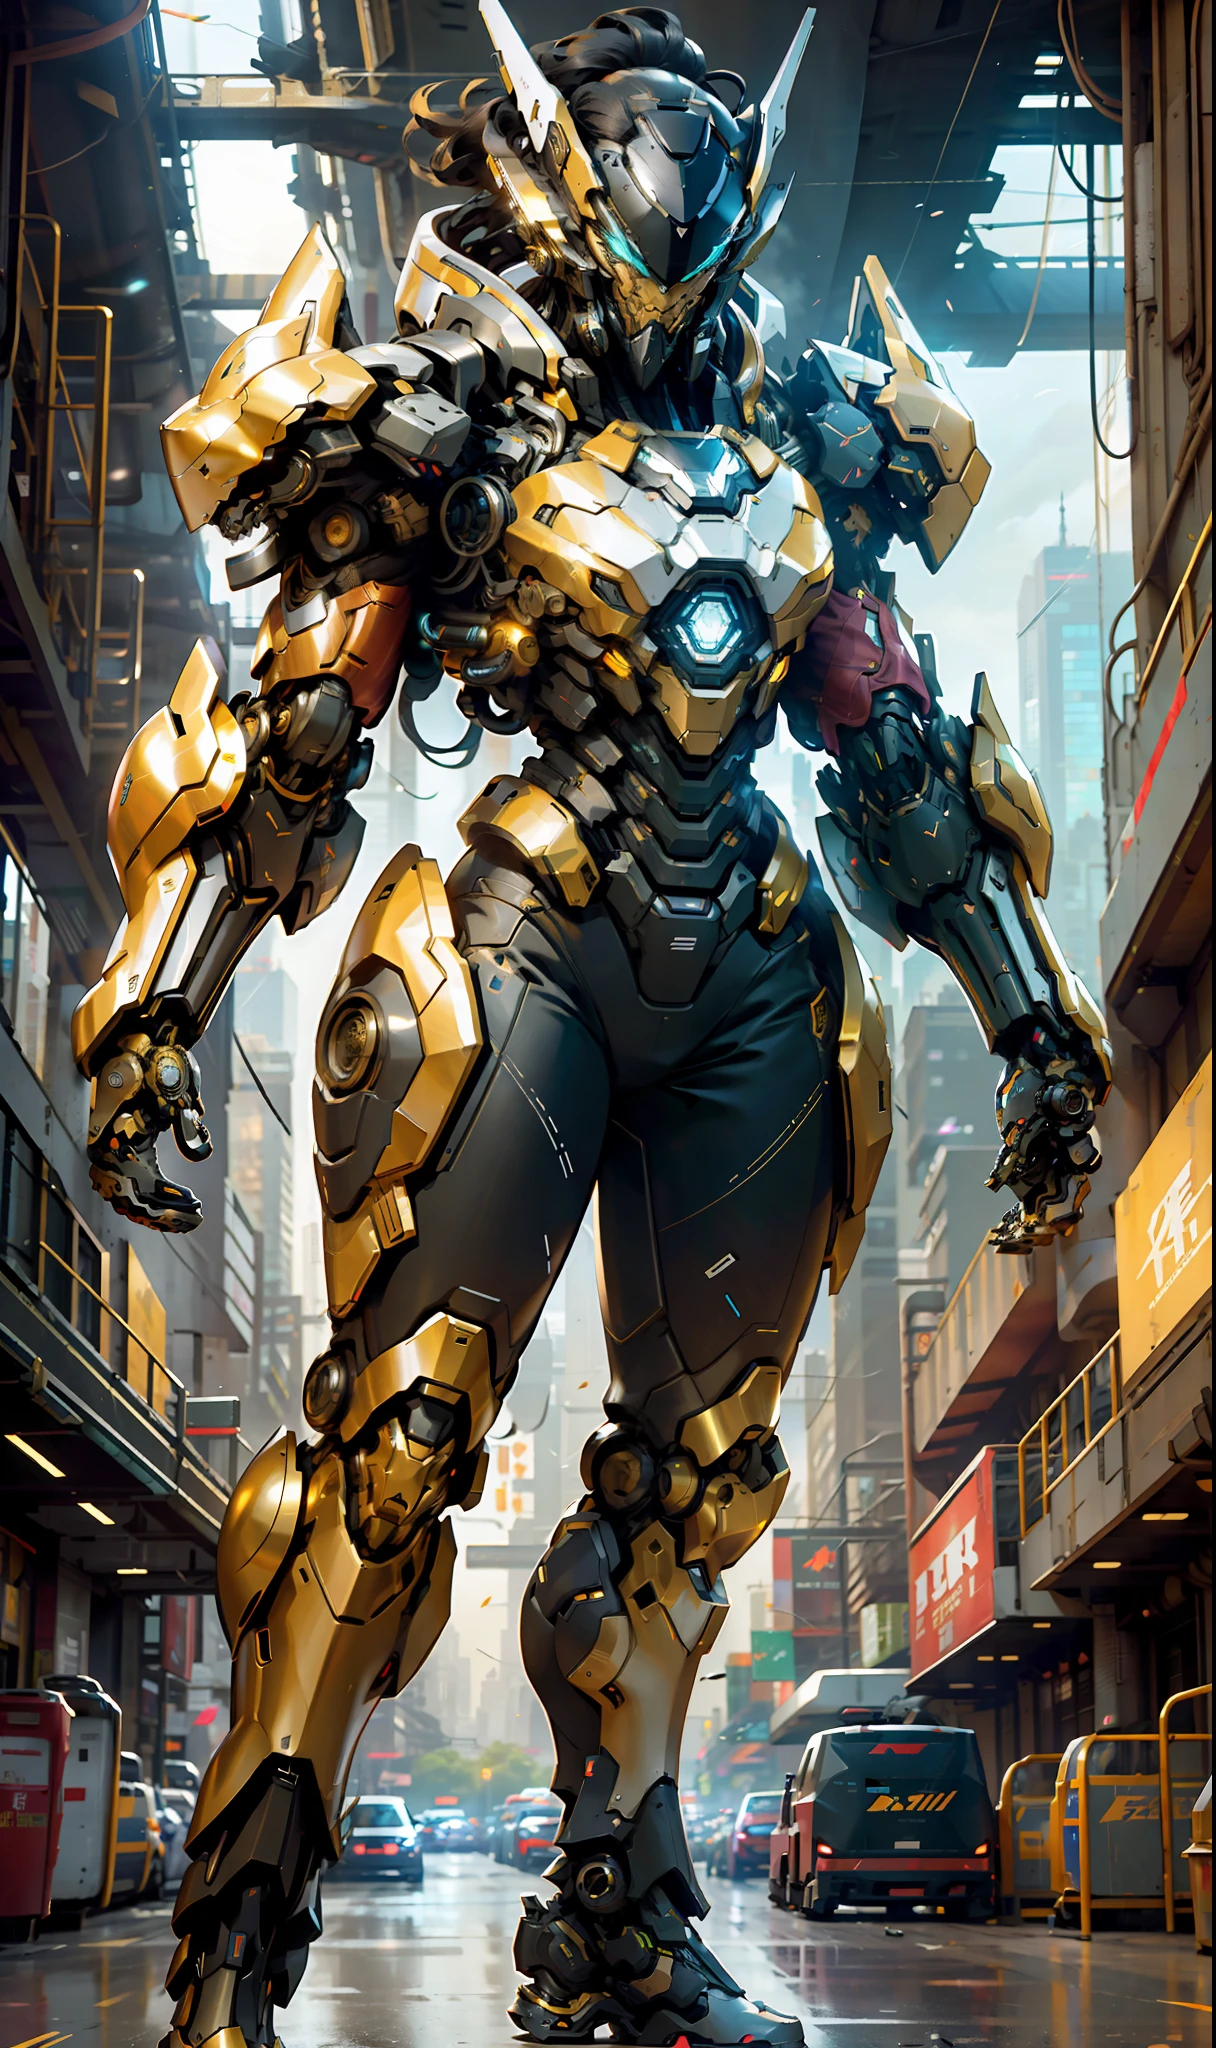 1 woman inside a huge 笨重 exoskeleton  robot  , ((笨重)) 盔甲, 水晶機甲, 迷幻細節,
9天,(城市戰爭背景), 清晰的线条,  負空間, 高對比度, 漸層色, (金黑色),展示全身肖像 , 最佳影像品質, 完美的分辨率, 穆迪, 銳利的焦點